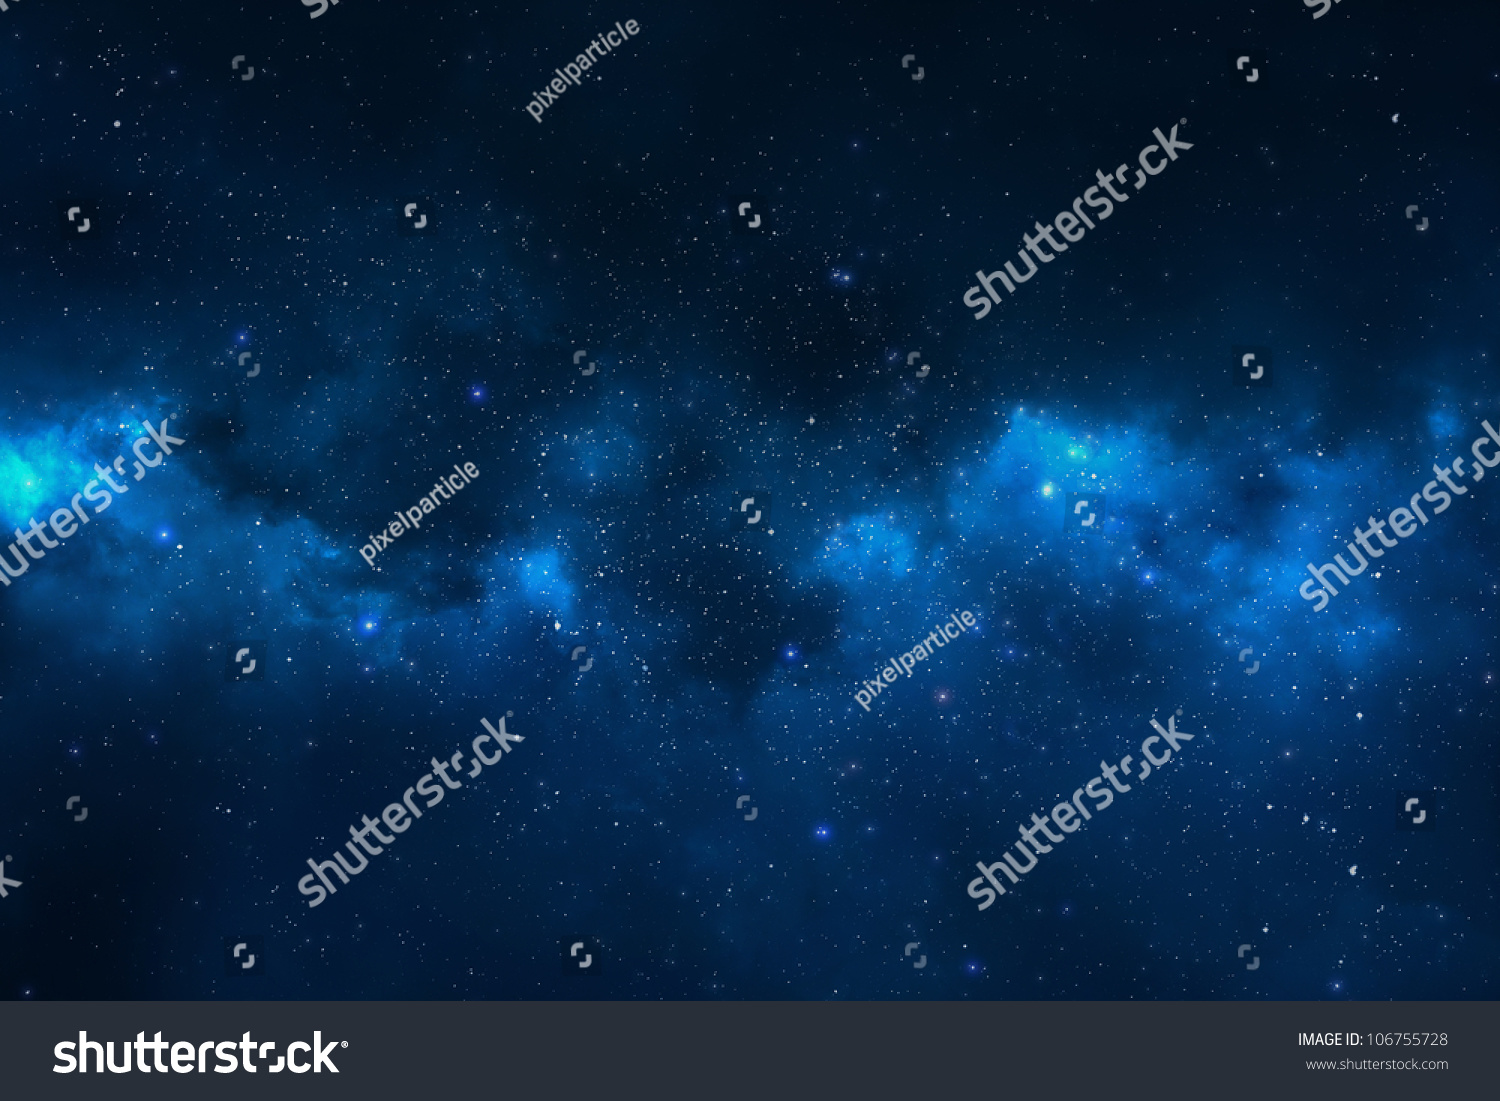 Universe filled with stars, nebula and galaxy #106755728